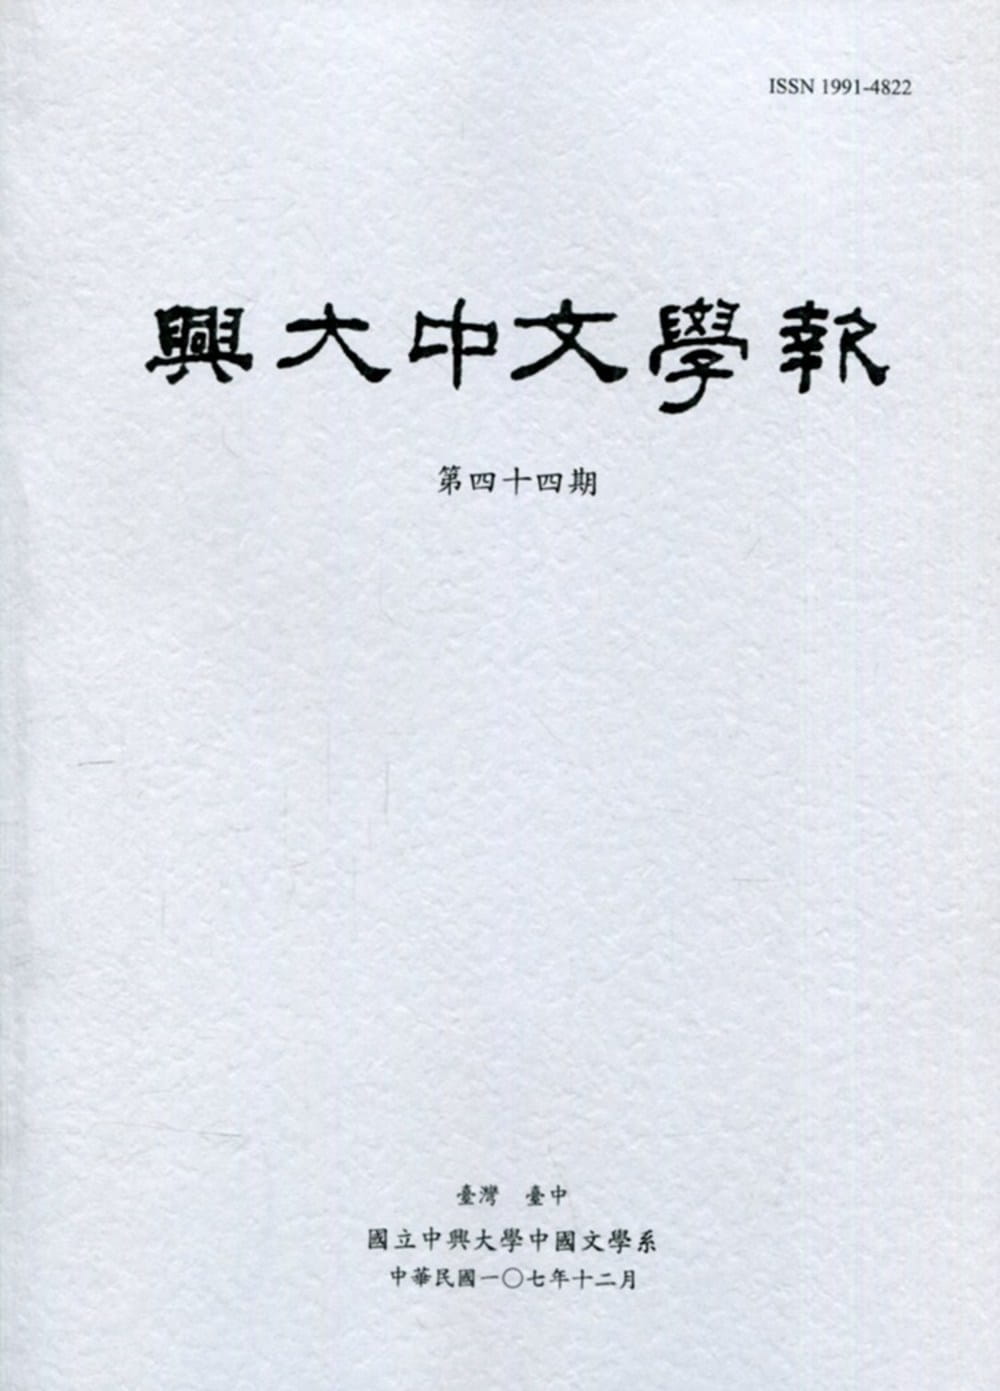 興大中文學報44期(107年12月)